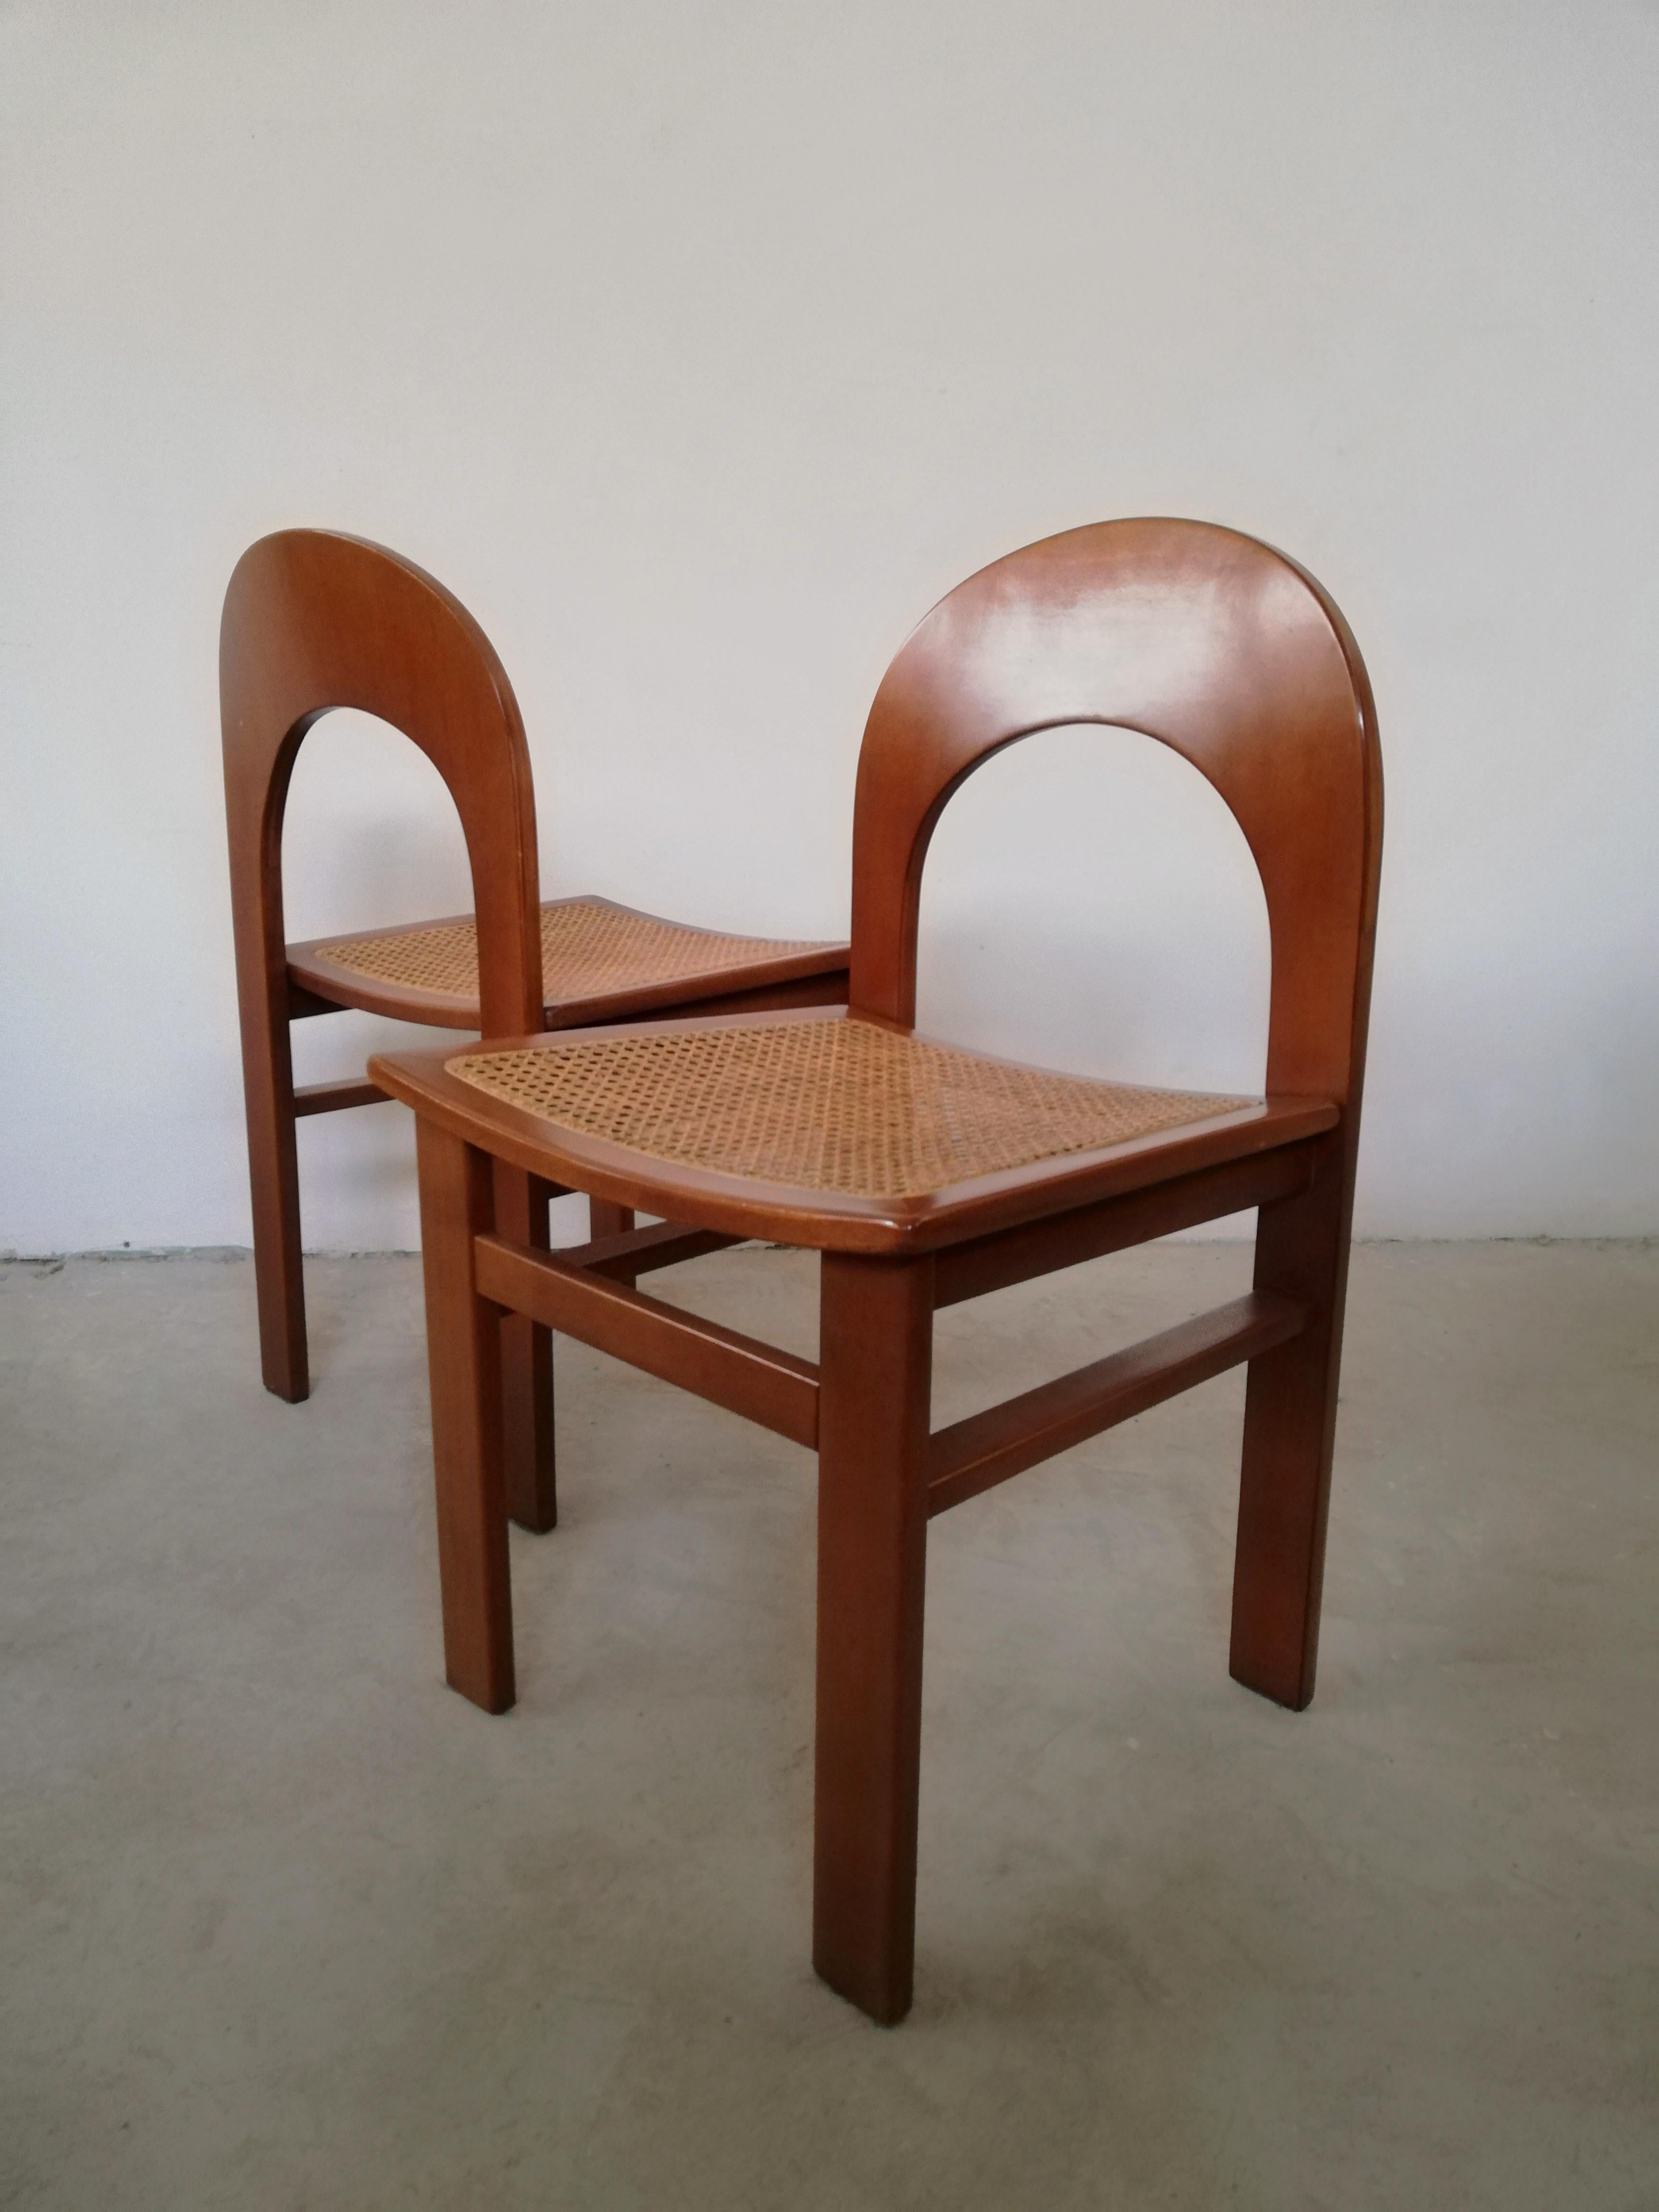 Un numéro difficile à trouver, 6 des rares chaises italiennes des années 70 conçues par Adalberto Caraceni pour Tagliabue de Cascina Armata.
Stables et solides, ces chaises du milieu du siècle sont fabriquées en contreplaqué cintré, plaqué de noyer